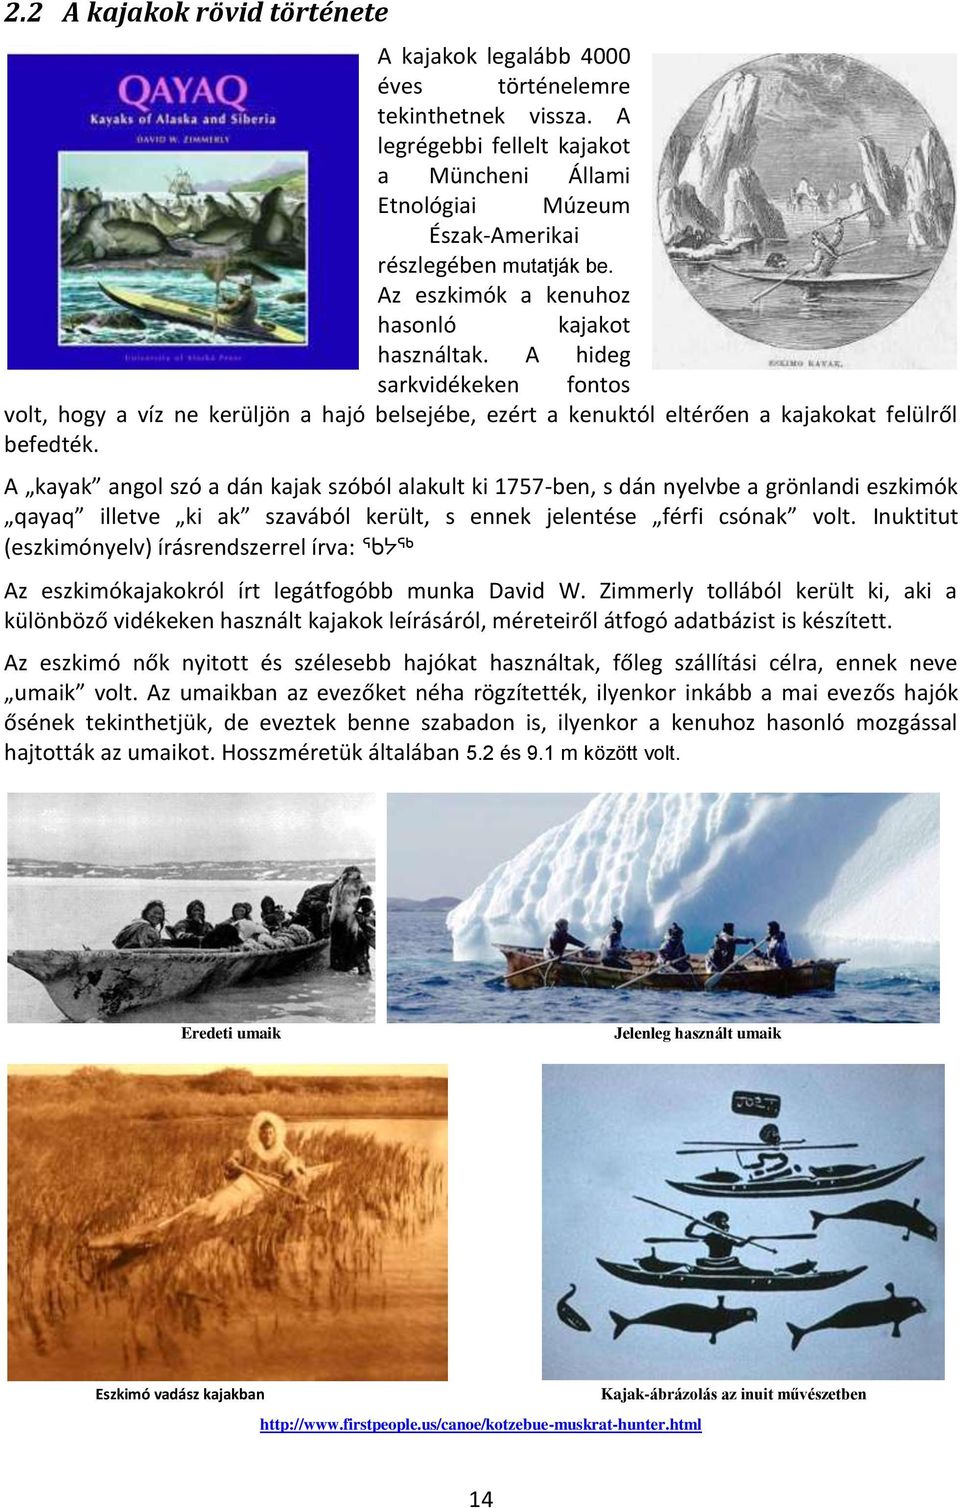 A kayak angol szó a dán kajak szóból alakult ki 1757-ben, s dán nyelvbe a grönlandi eszkimók qayaq illetve ki ak szavából került, s ennek jelentése férfi csónak volt.